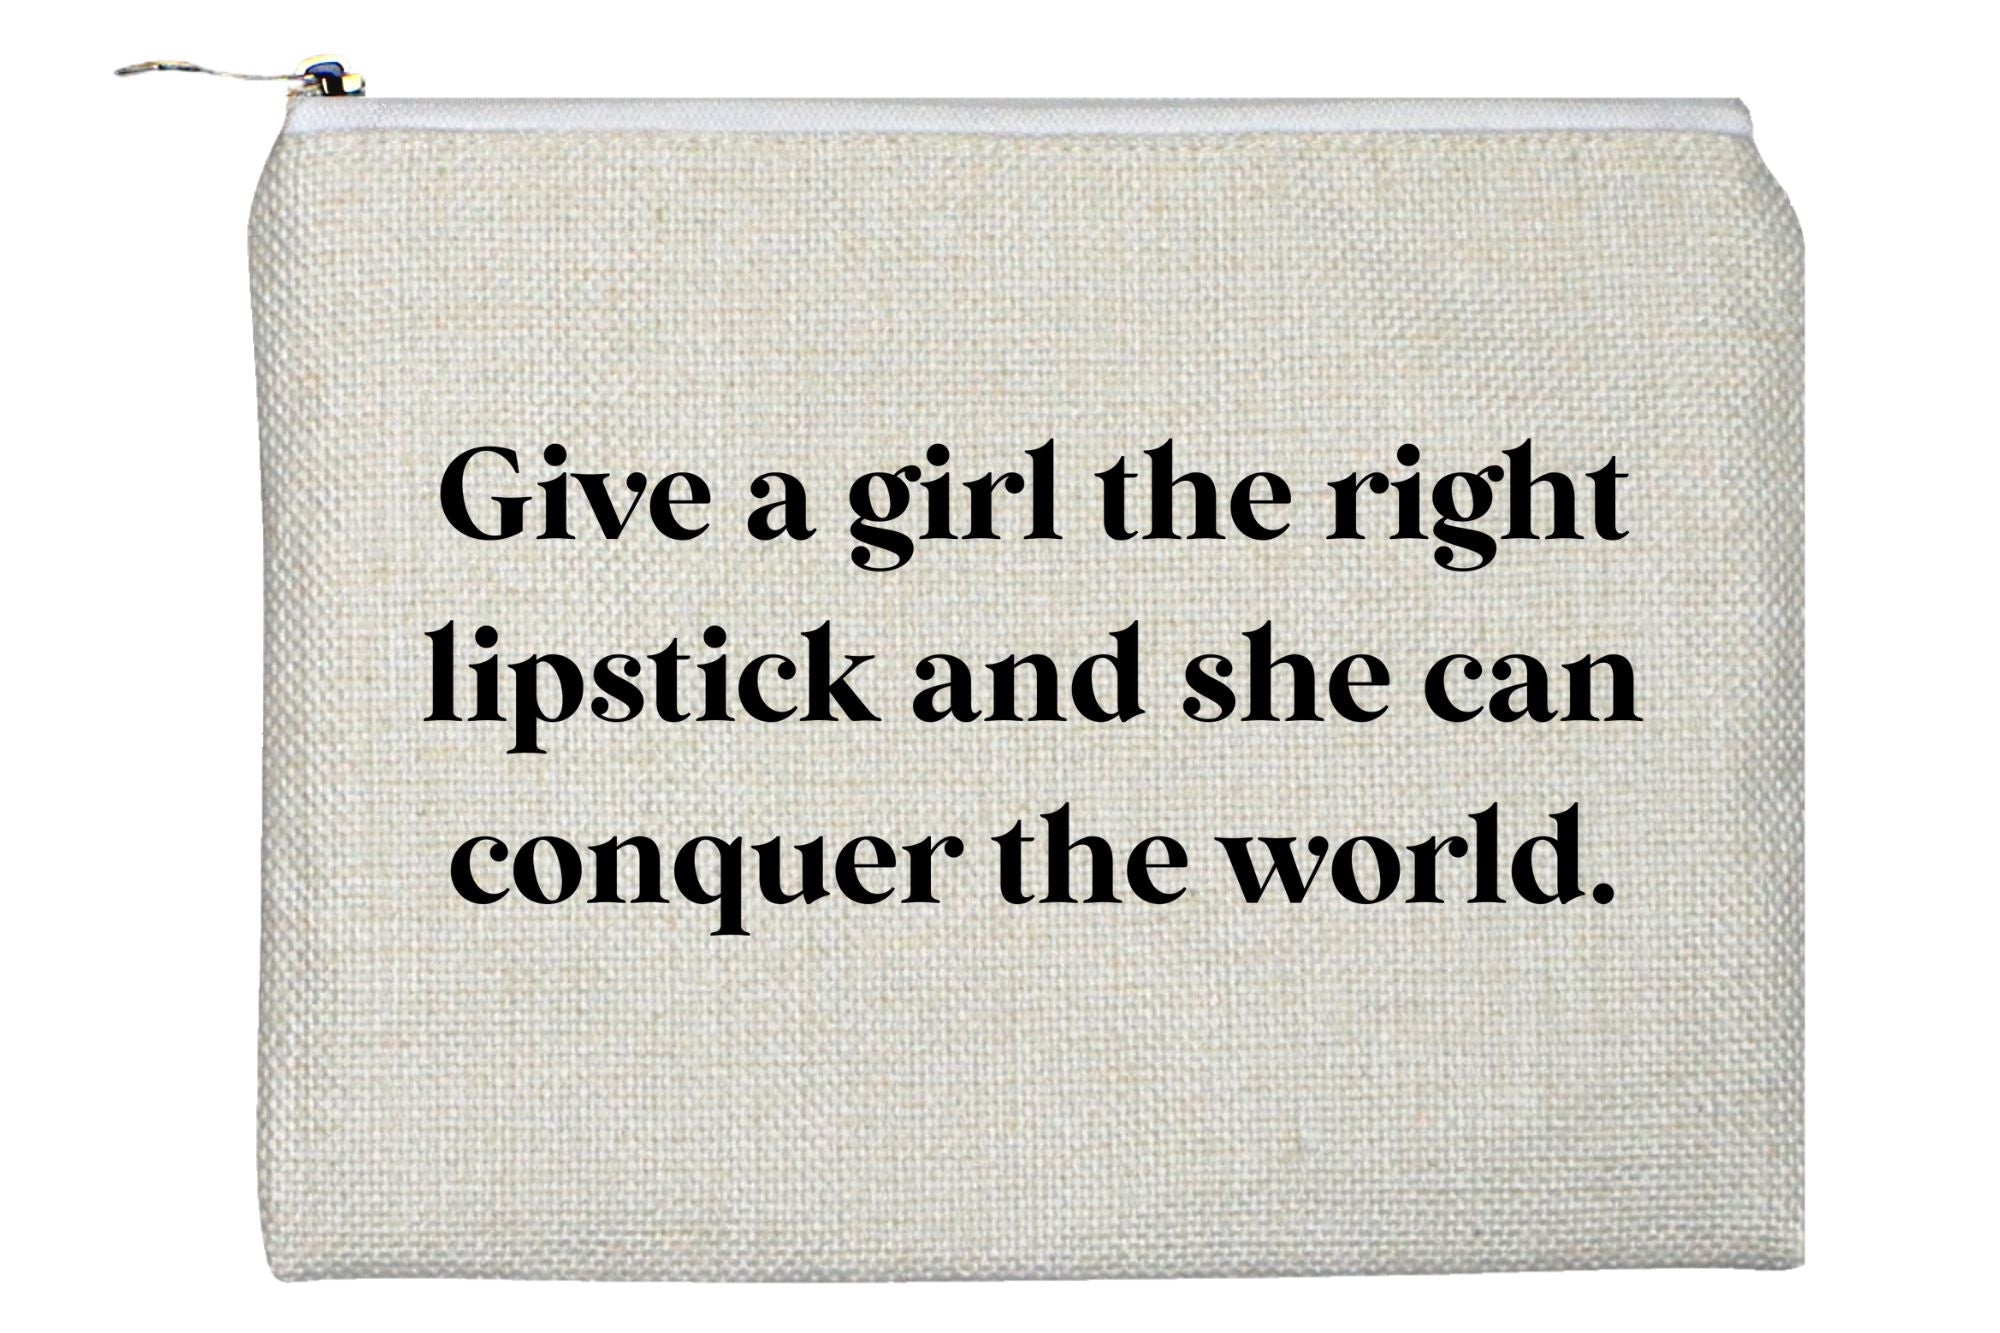 The Right Lipstick Accessory Bag